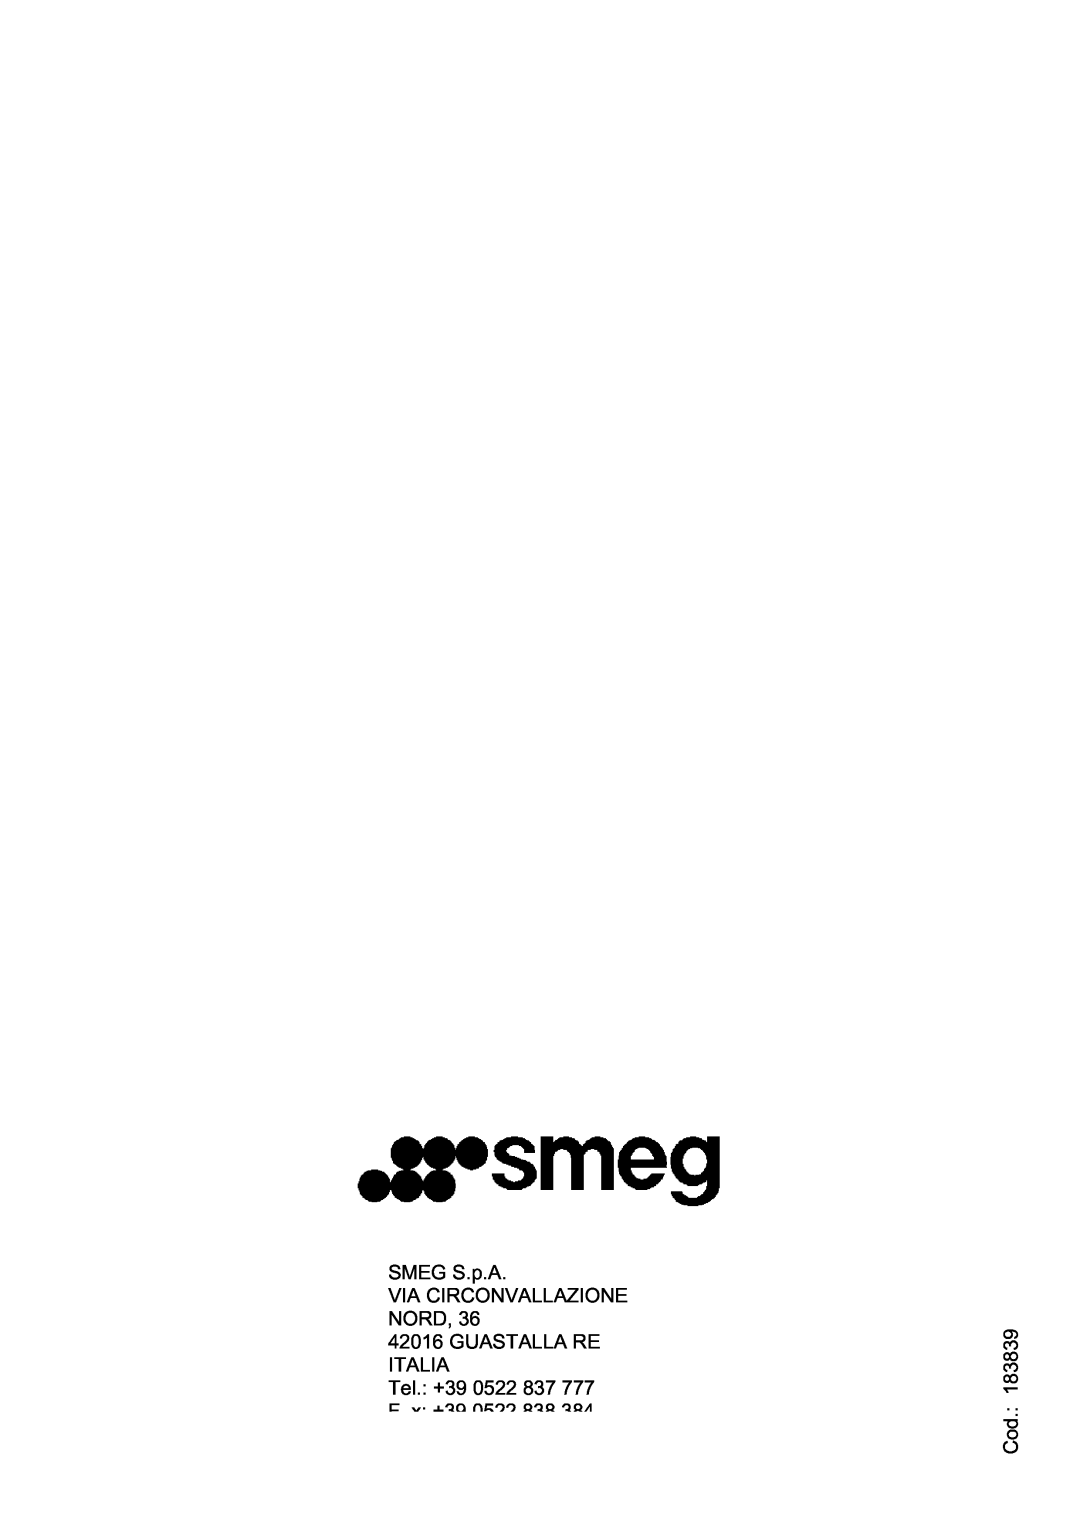 Smeg FME20EX manual SMEG S.p.A VIA CIRCONVALLAZIONE NORD, GUASTALLA RE ITALIA Tel. +39, F x +39, Cod 